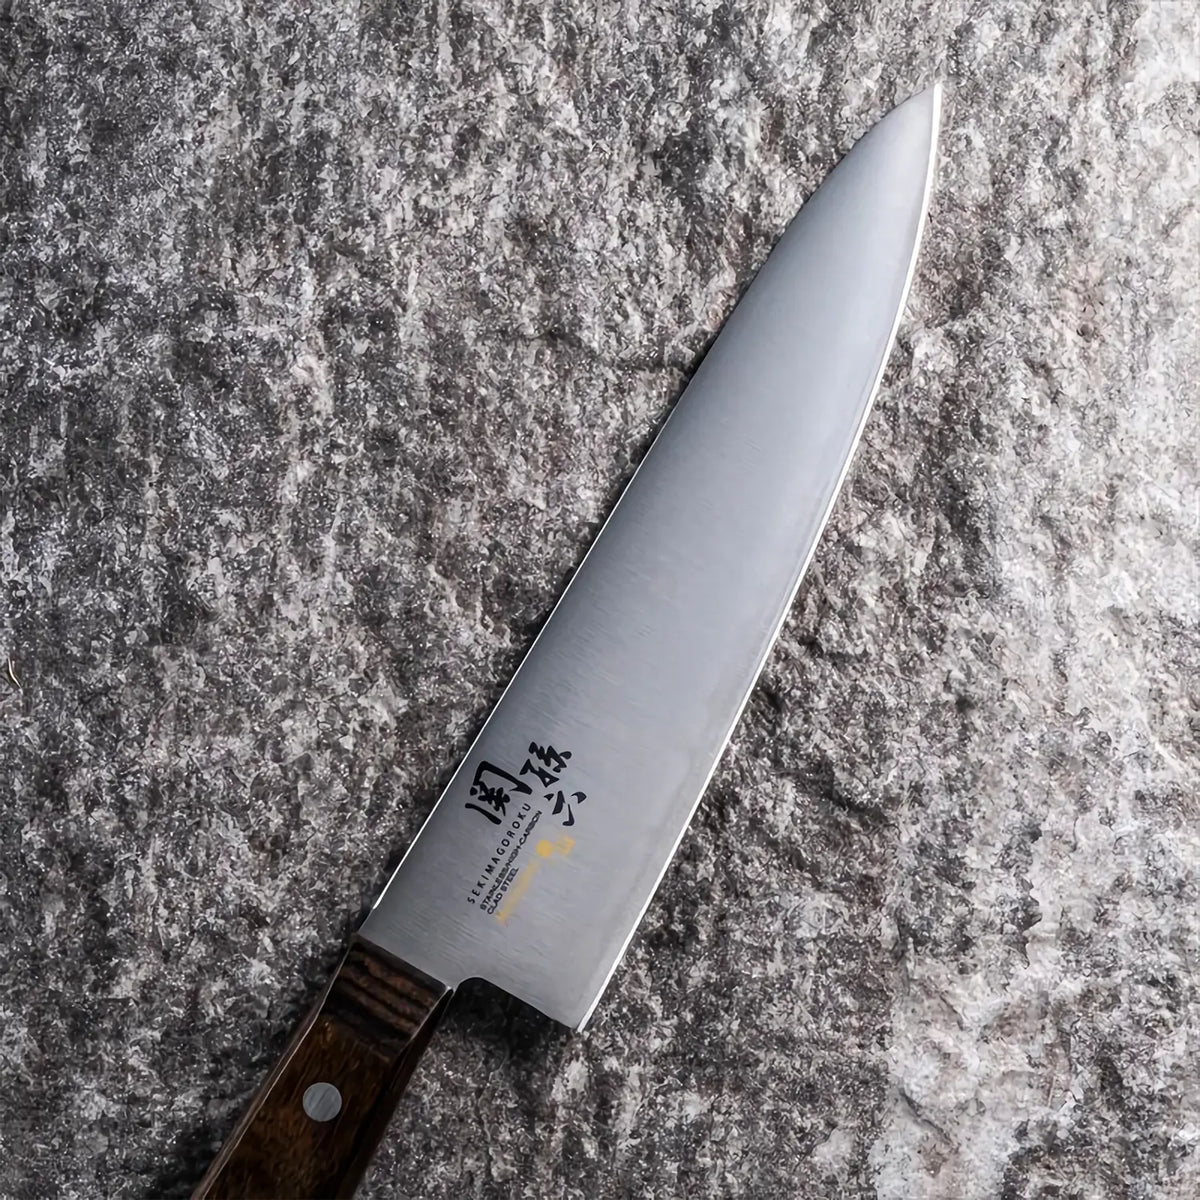 Seki Magoroku Momoyama Stainless Steel Gyuto Knife